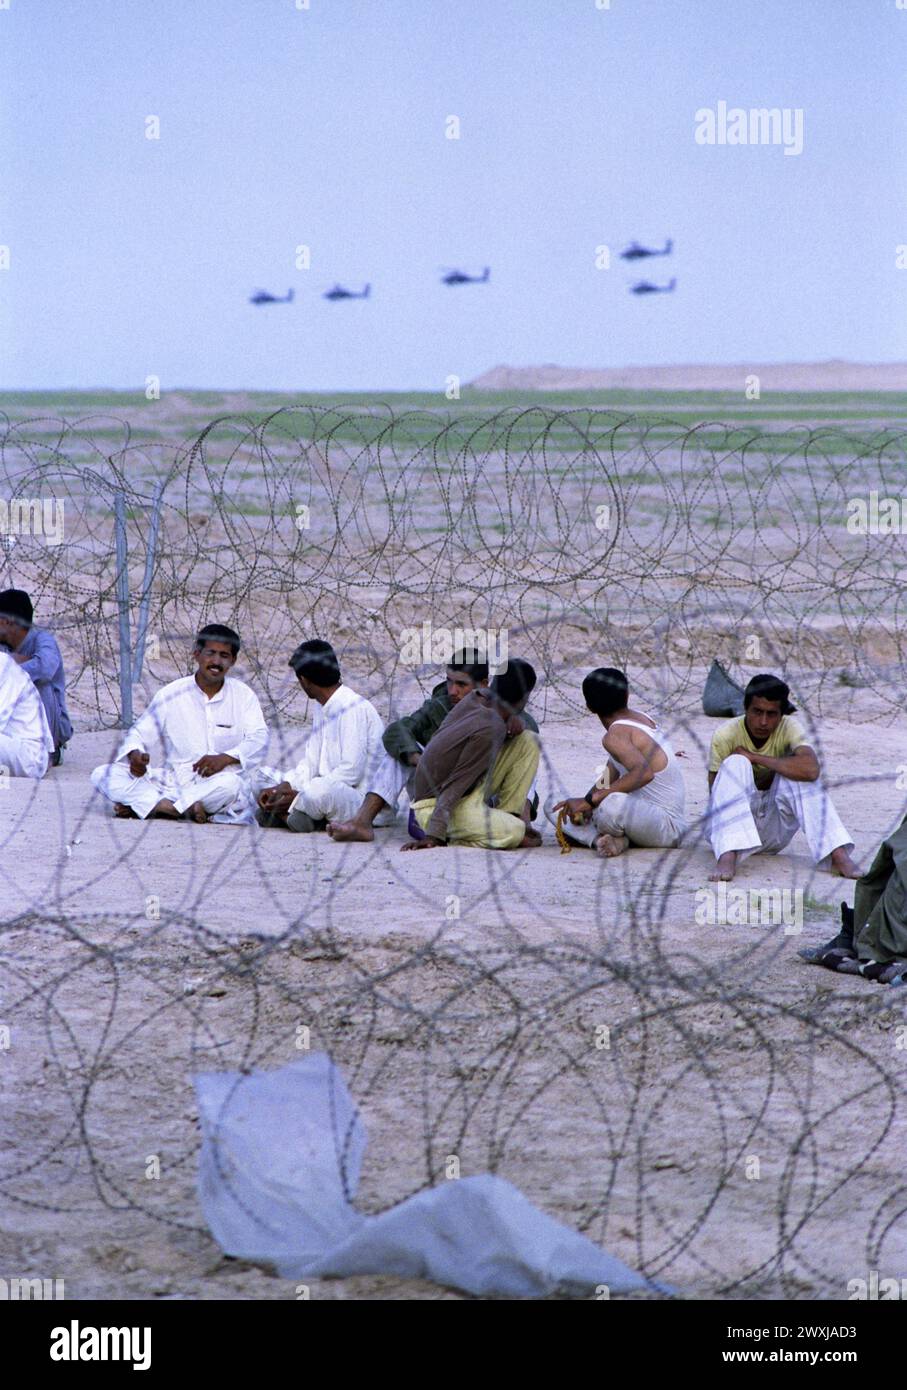 26 mars 1991 Un essaim d'hélicoptères Apache de l'armée américaine survolent des prisonniers de guerre irakiens dans un complexe temporaire de l'armée américaine dans le sud de l'Irak. Banque D'Images